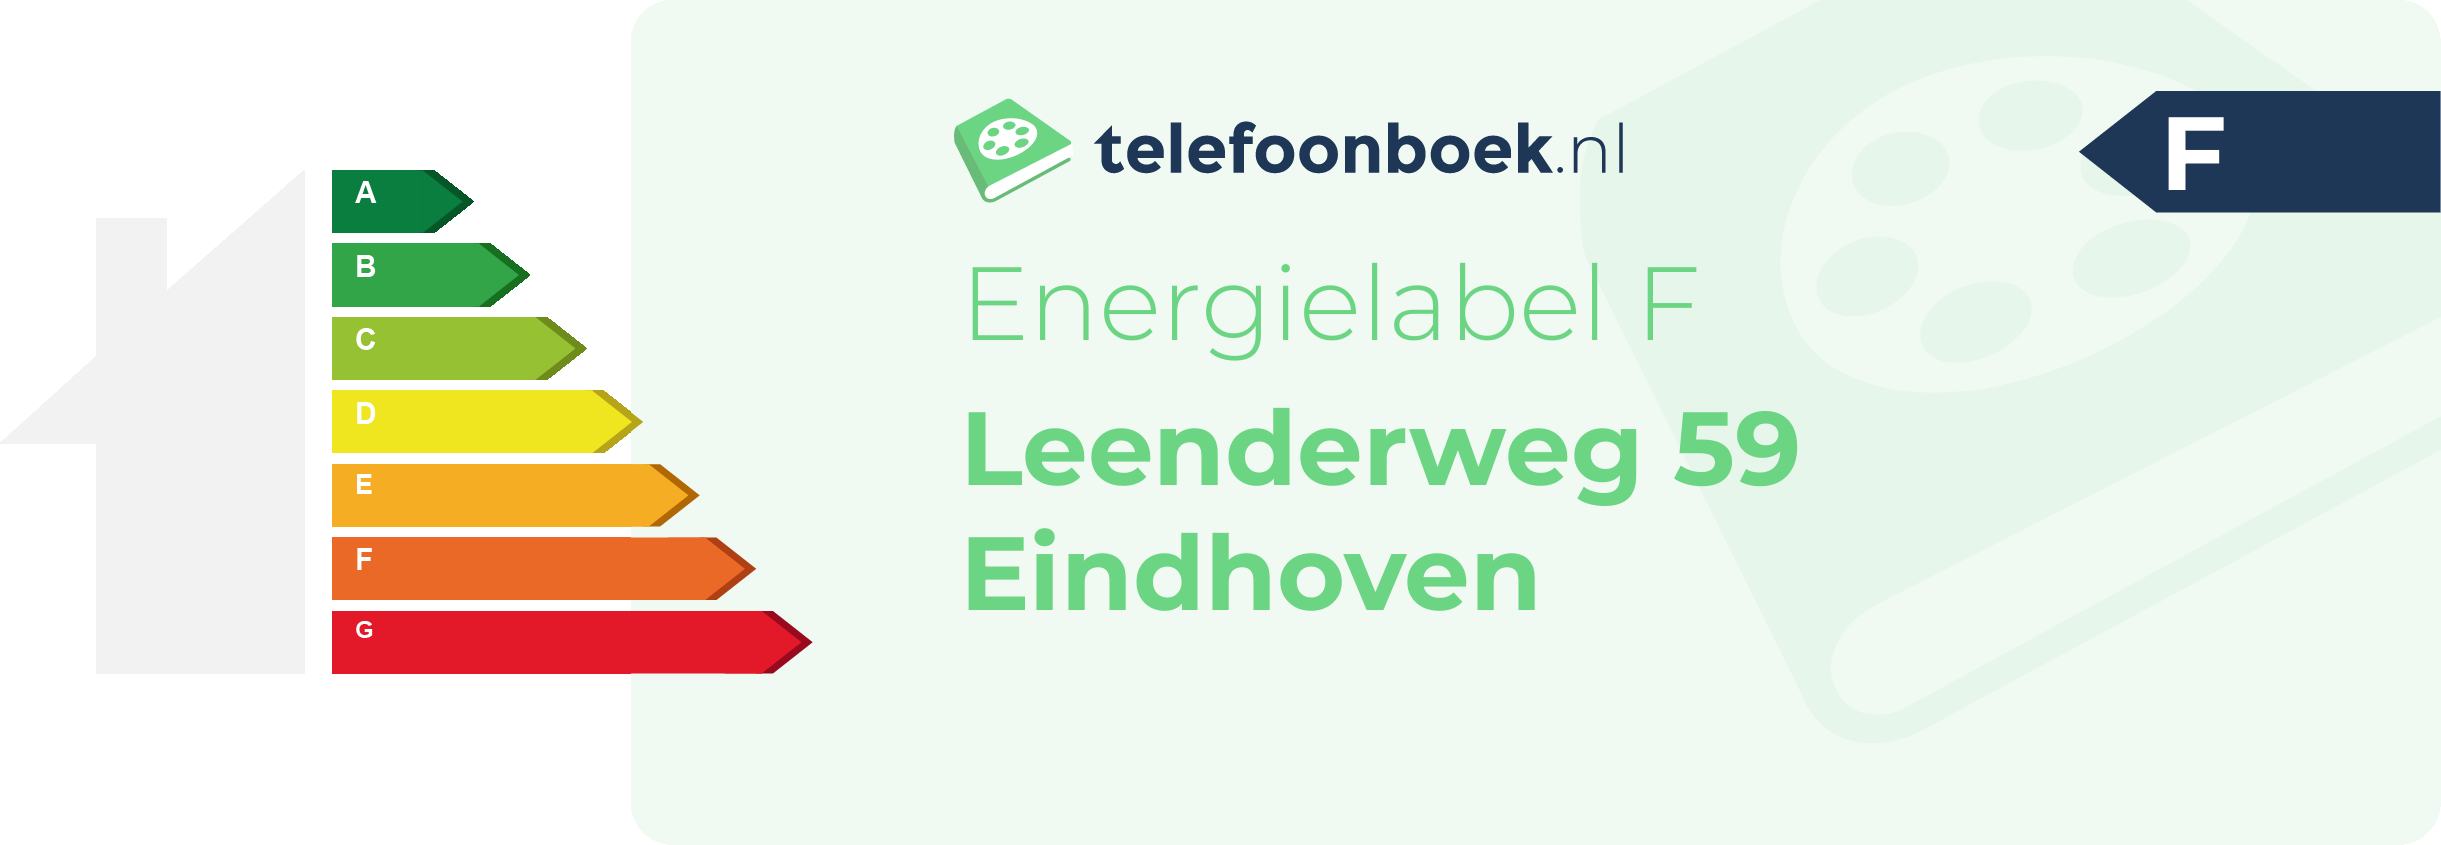 Energielabel Leenderweg 59 Eindhoven